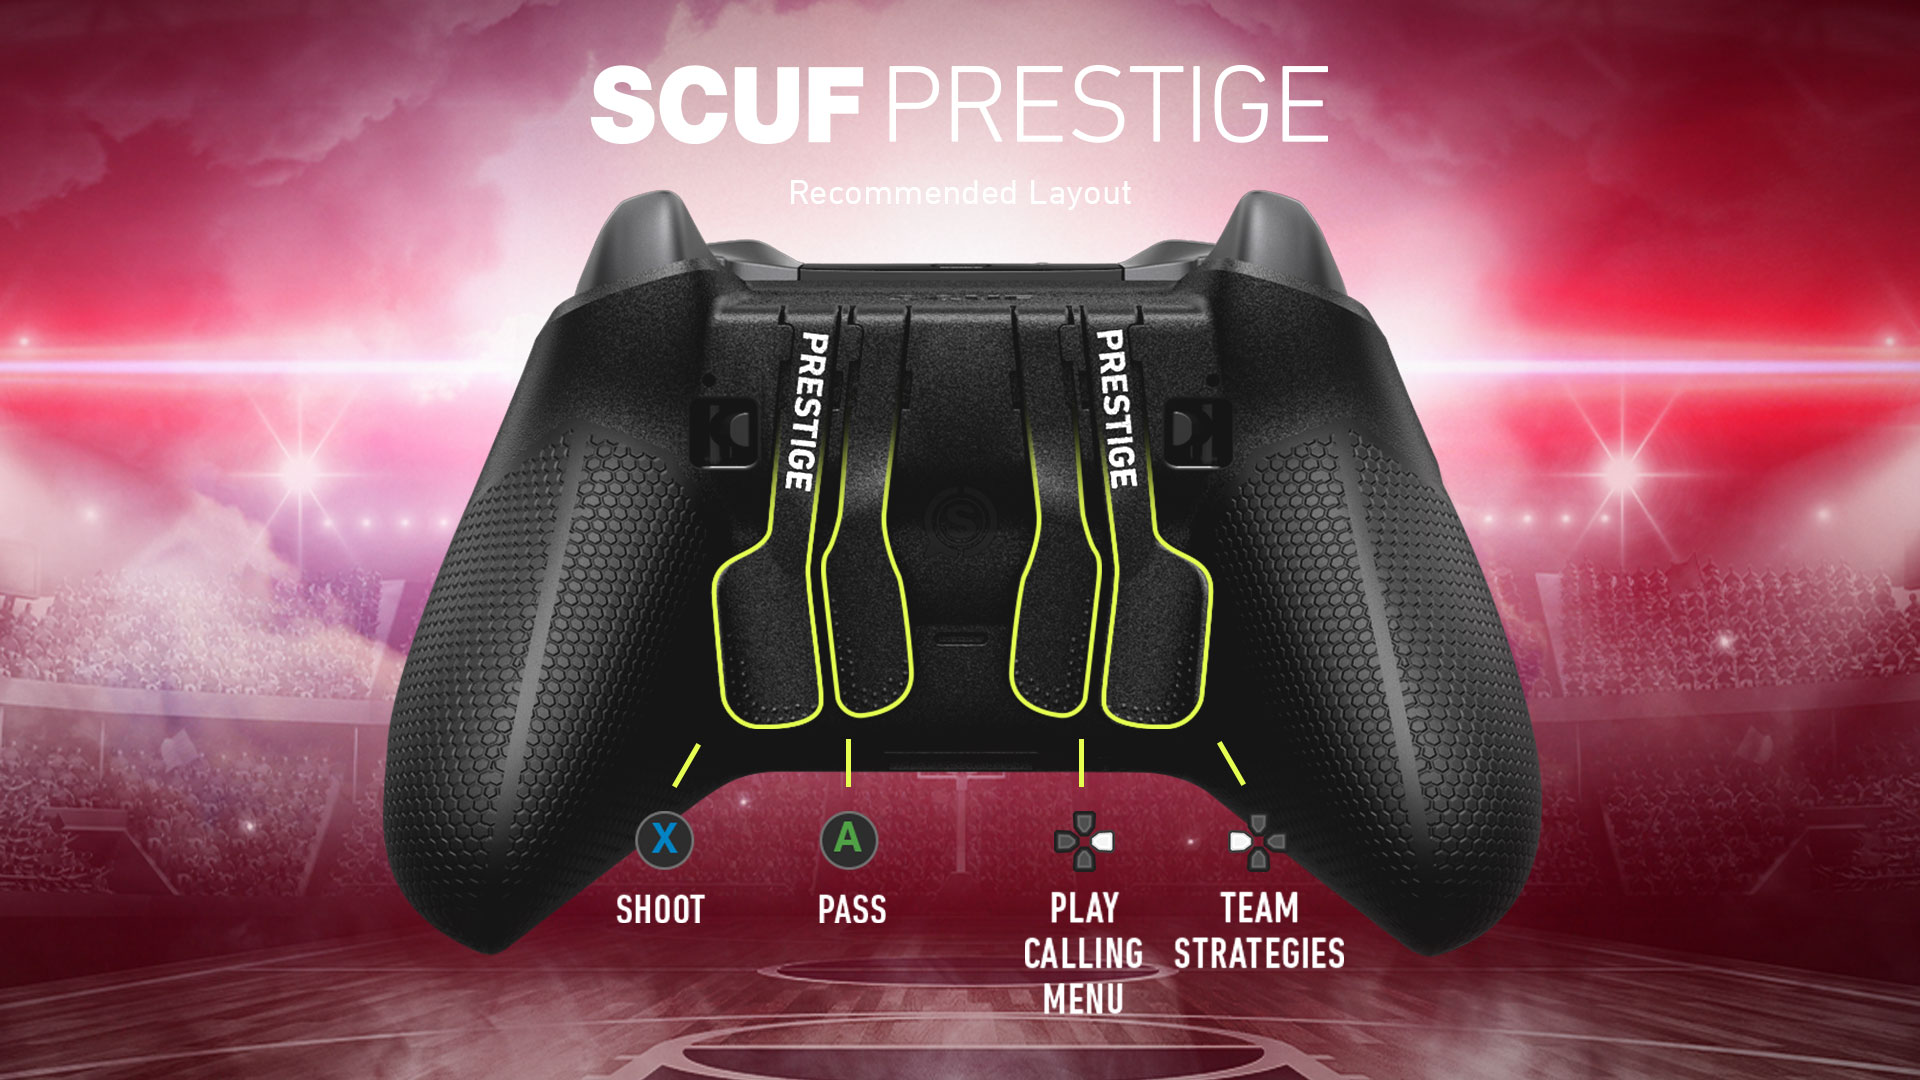 SCUF Prestige NBA 2K20 Controller Configuration